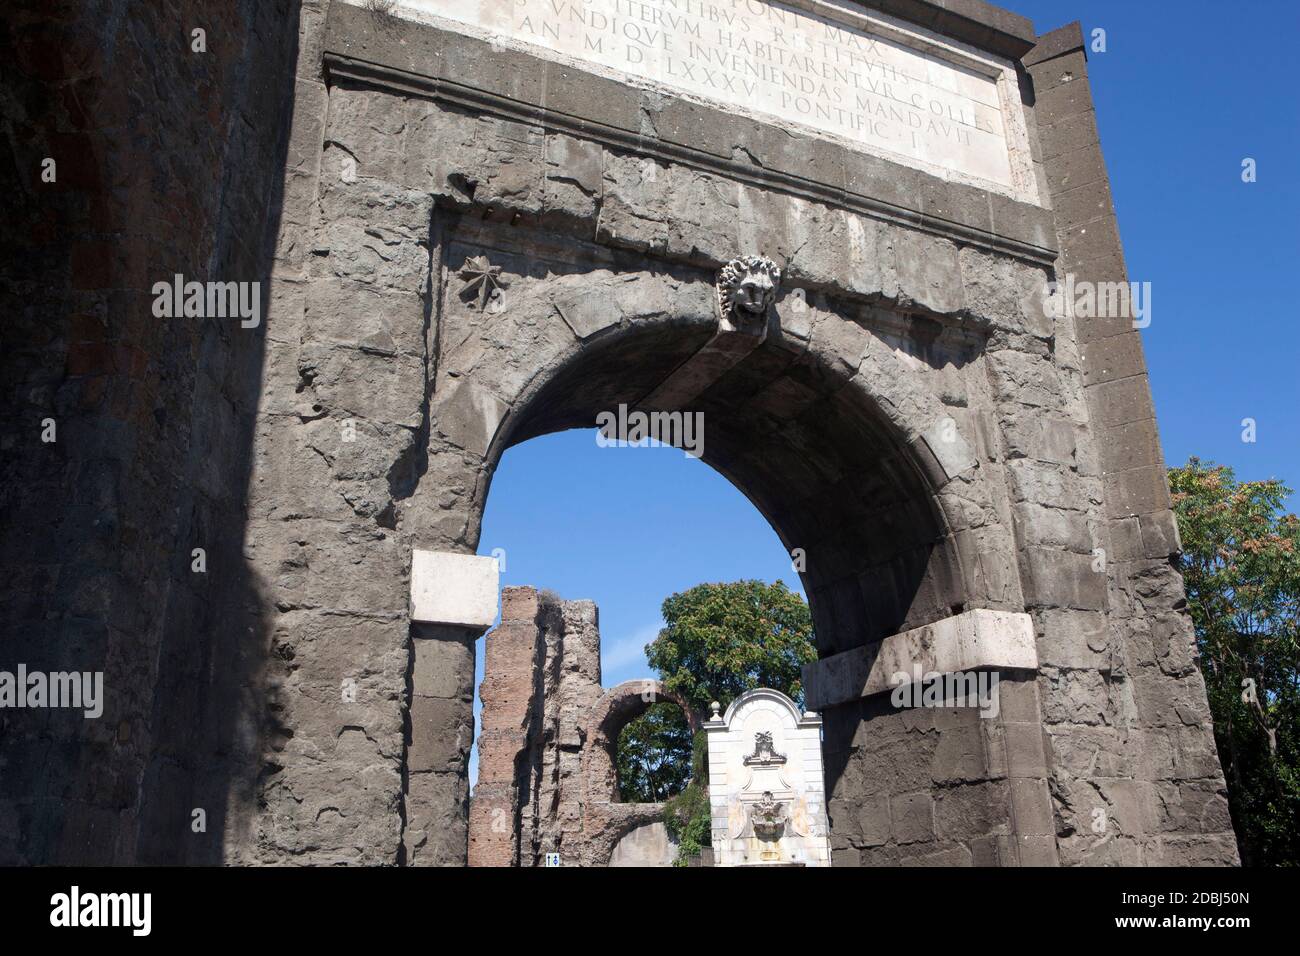 La porte Marcio Aqueduct entrant dans la ville, Rome, Lazio, Italie, Europe Banque D'Images